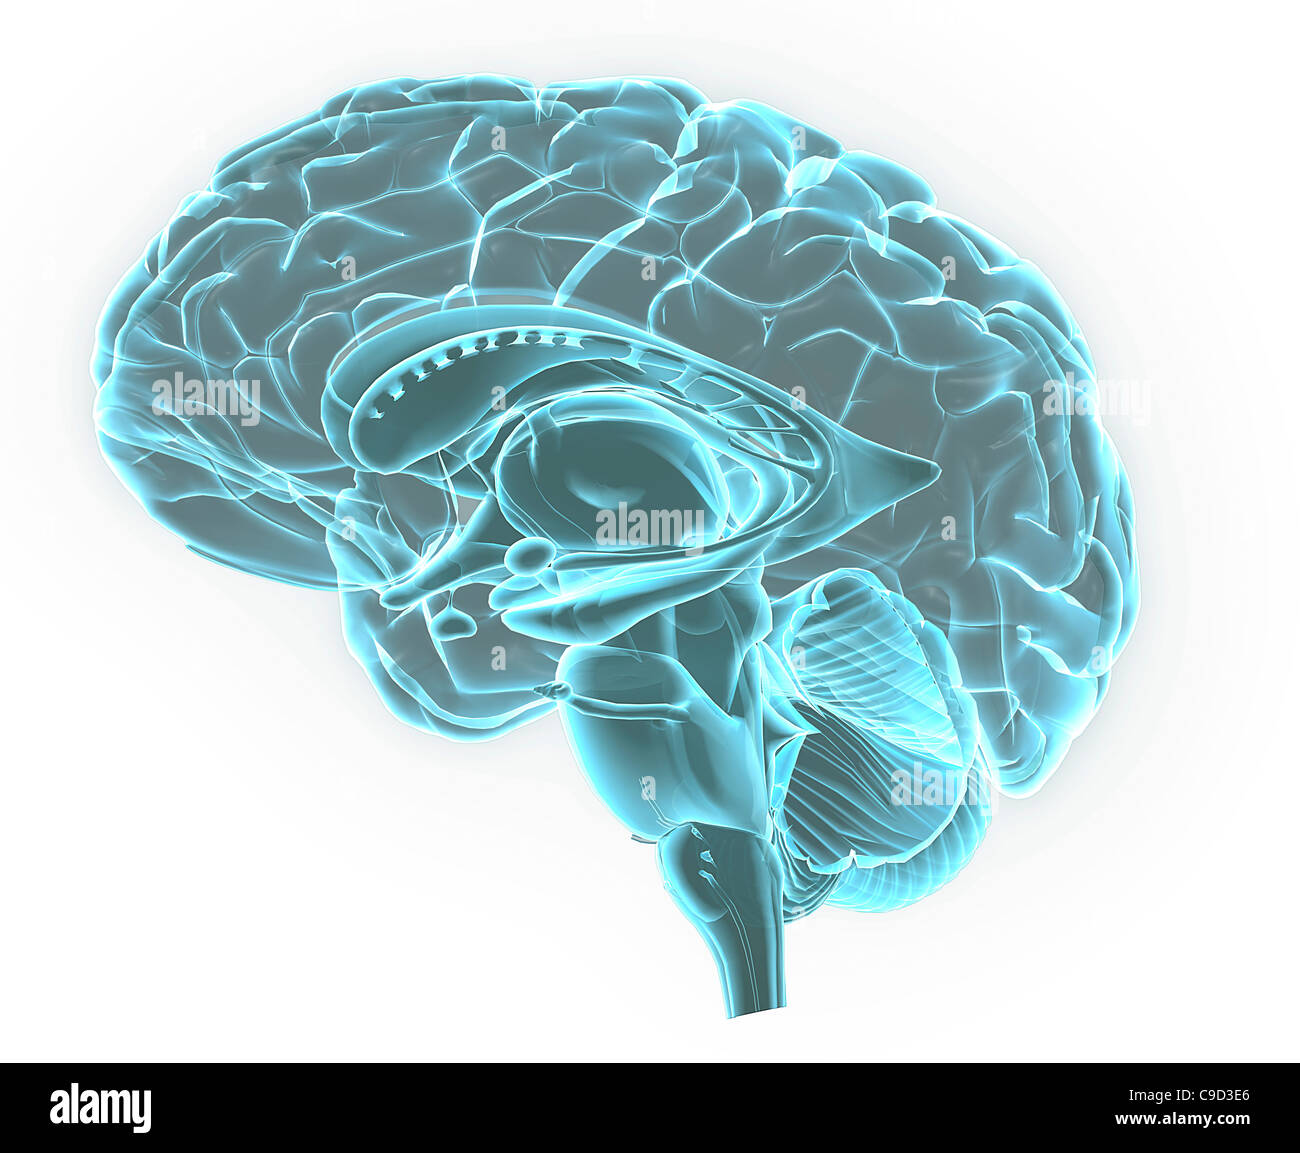 Blaue Röntgenbild der Anatomie des menschlichen Gehirns, 3-d-sagittale Abschnitt (Seitenansicht, Querschnitt) des menschlichen Gehirns und seiner Teile Stockfoto